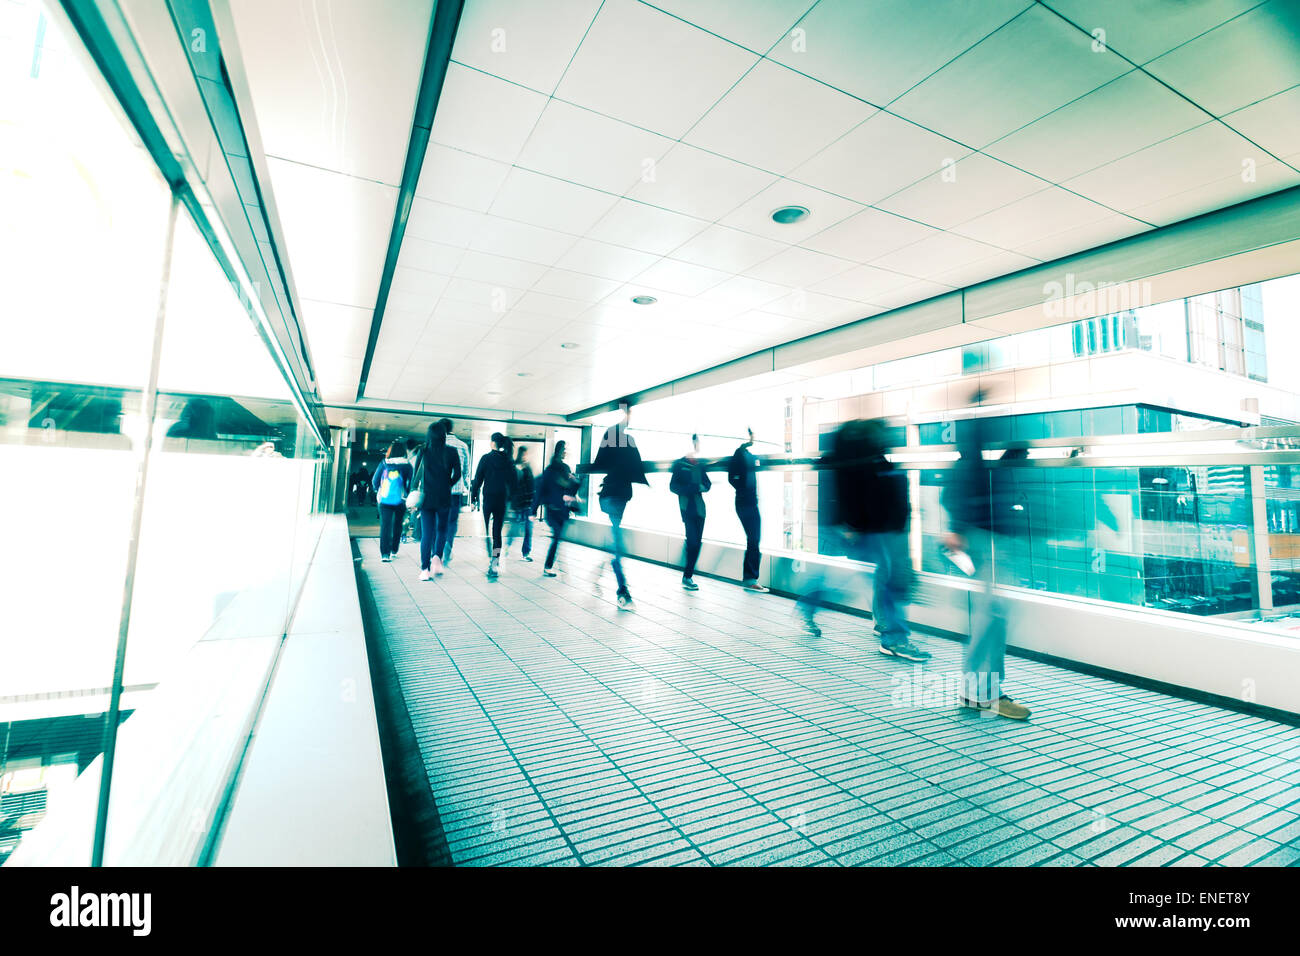 Résumé Contexte la ville. Image floue de personnes se déplaçant dans la rue bondée au tunnel. Hong Kong. Effet de flou, esprit vintage toni Banque D'Images